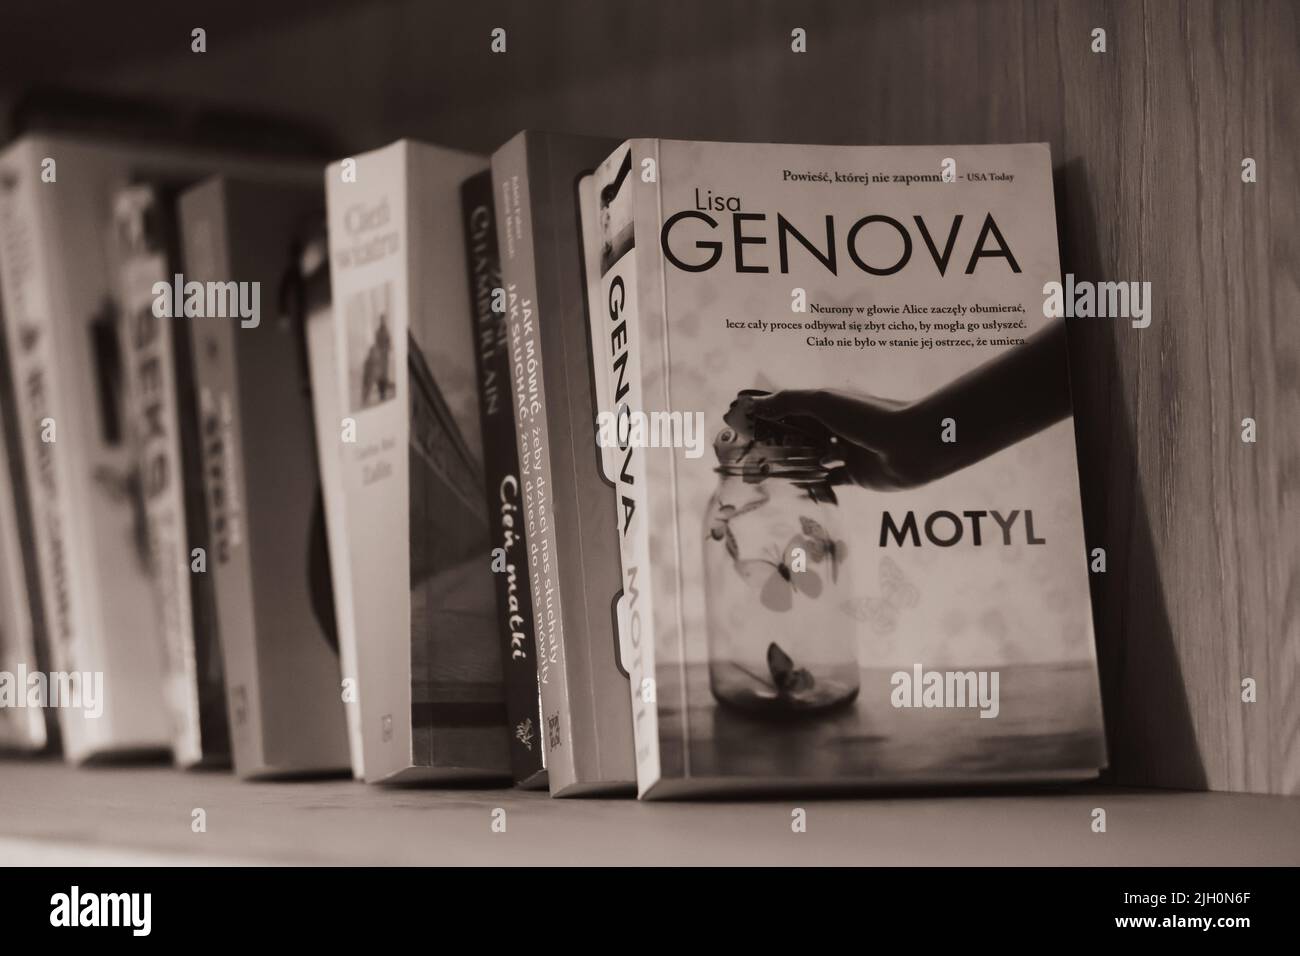 La scala di grigi dei libri in fila con lo storybook polacco Genova Motyl davanti Foto Stock